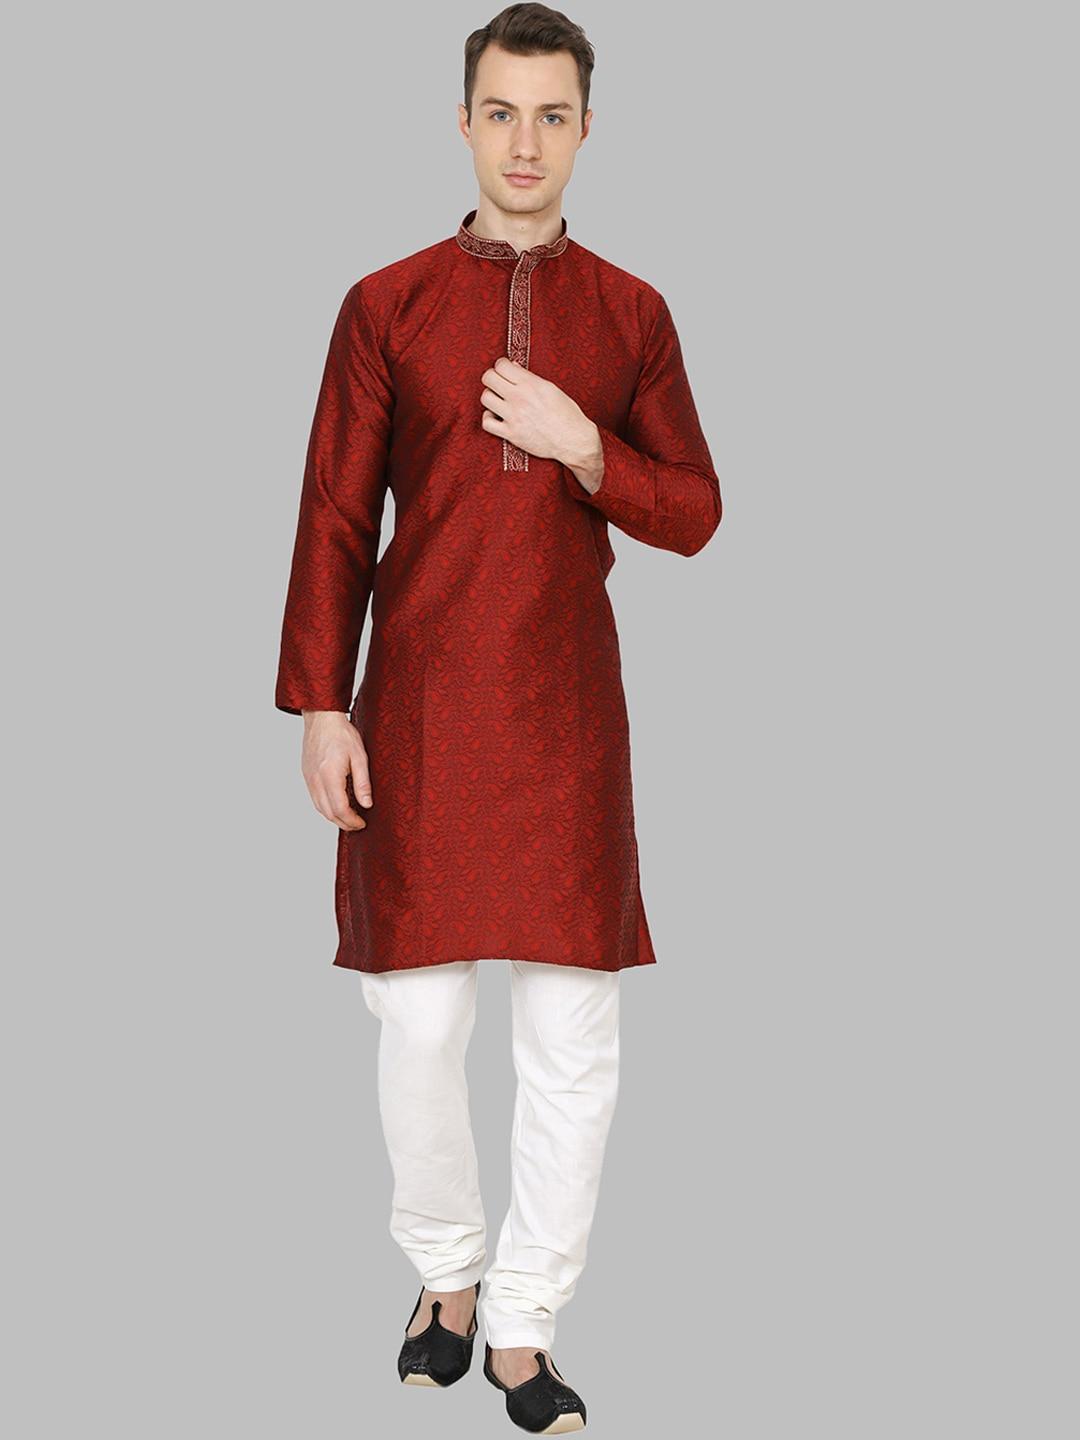 royal kurta men maroon ethnic motifs printed dupion silk kurta with churidar